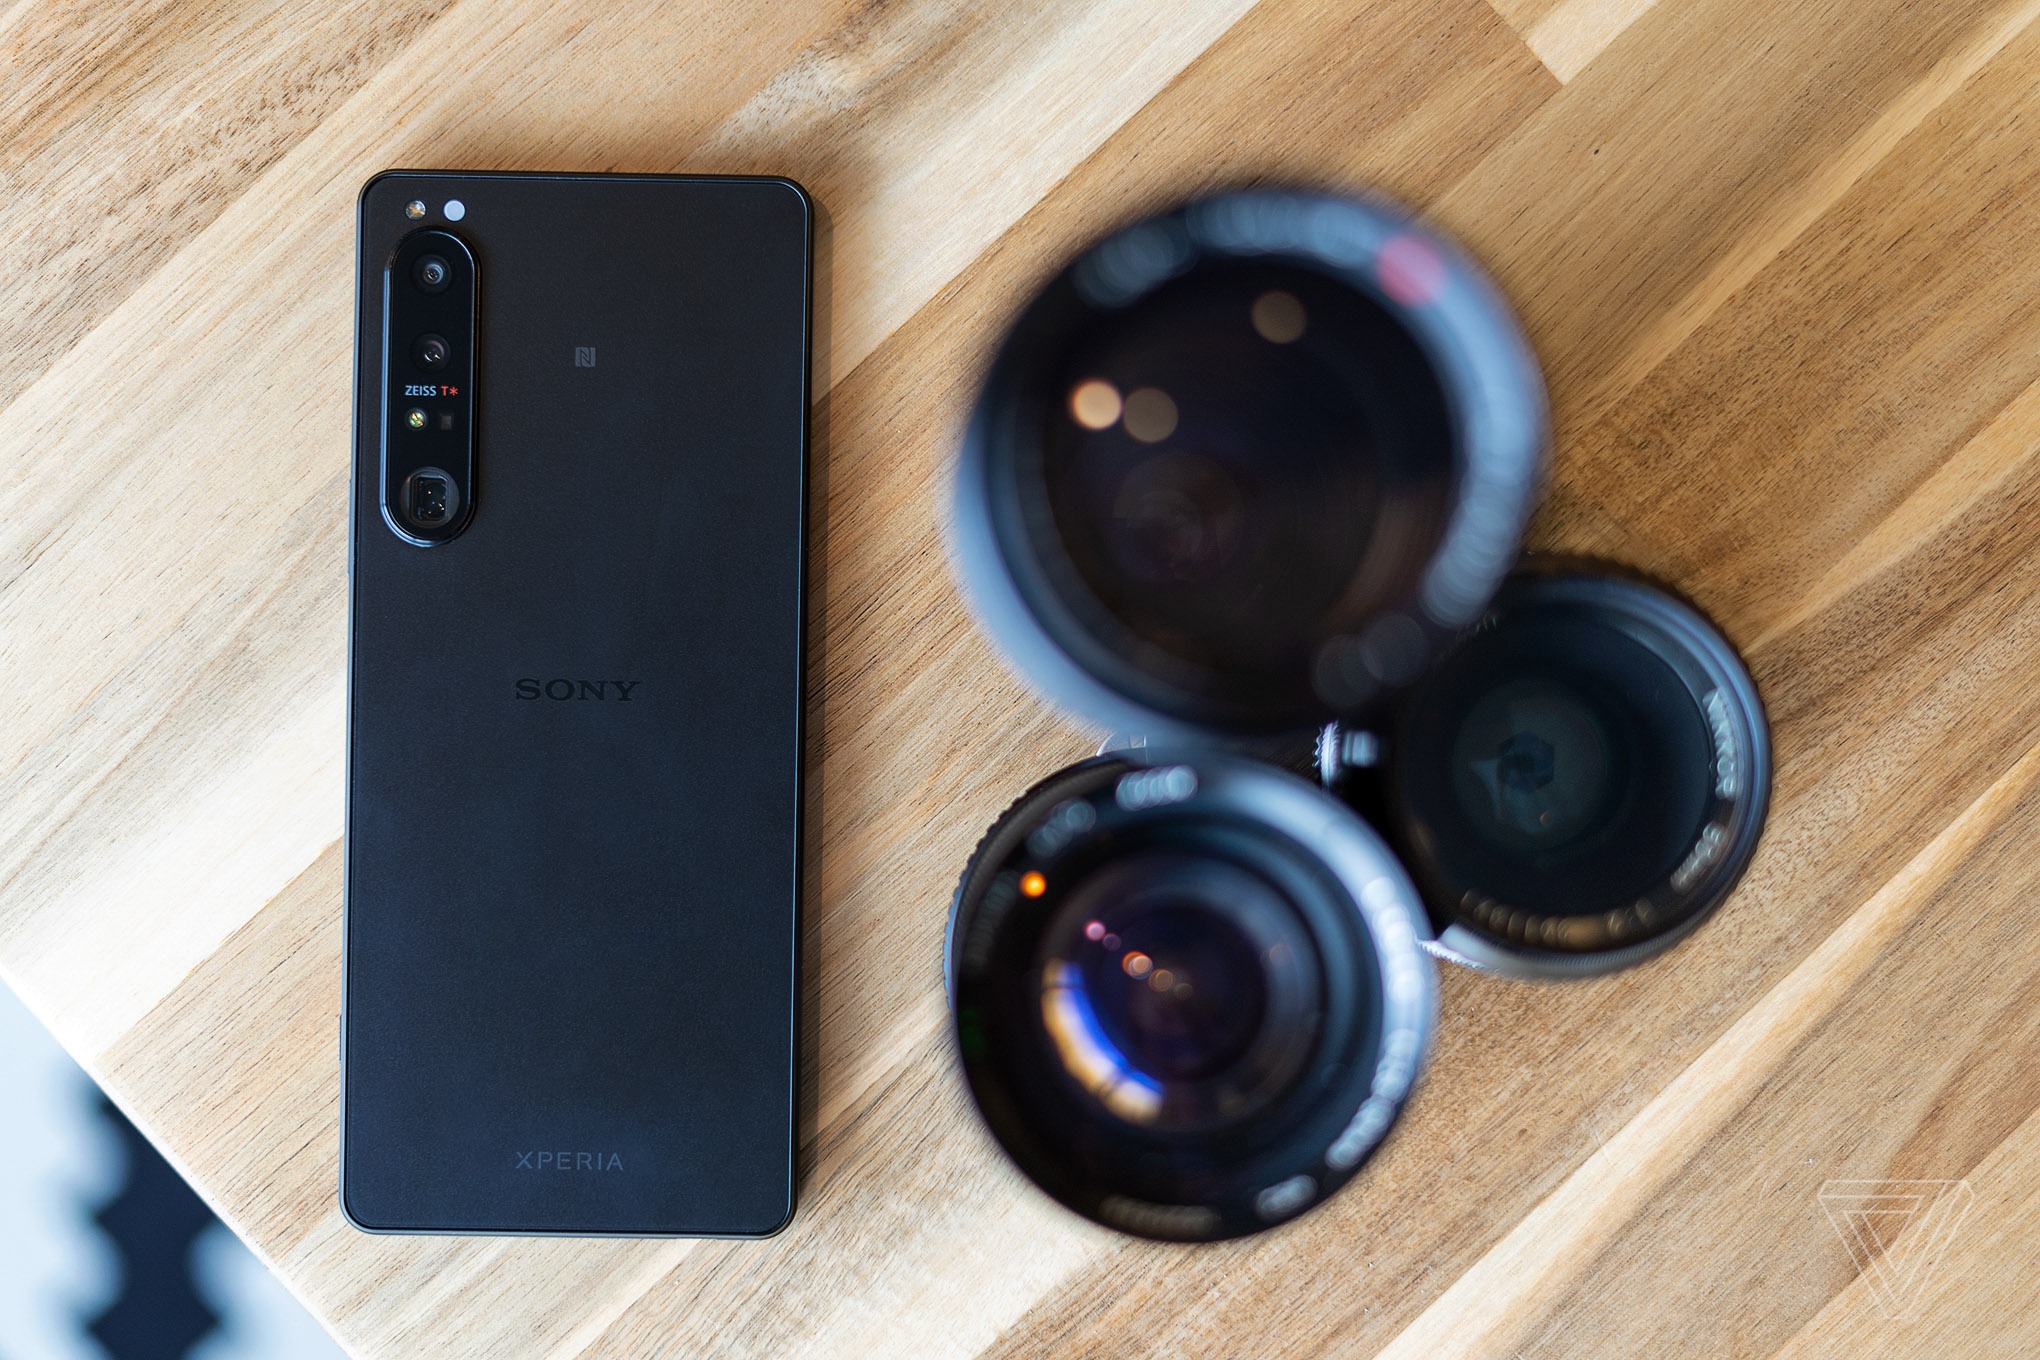 Smartphone mới của Sony có giá 1.600 USD, hệ thống camera đặc biệt - ảnh 2